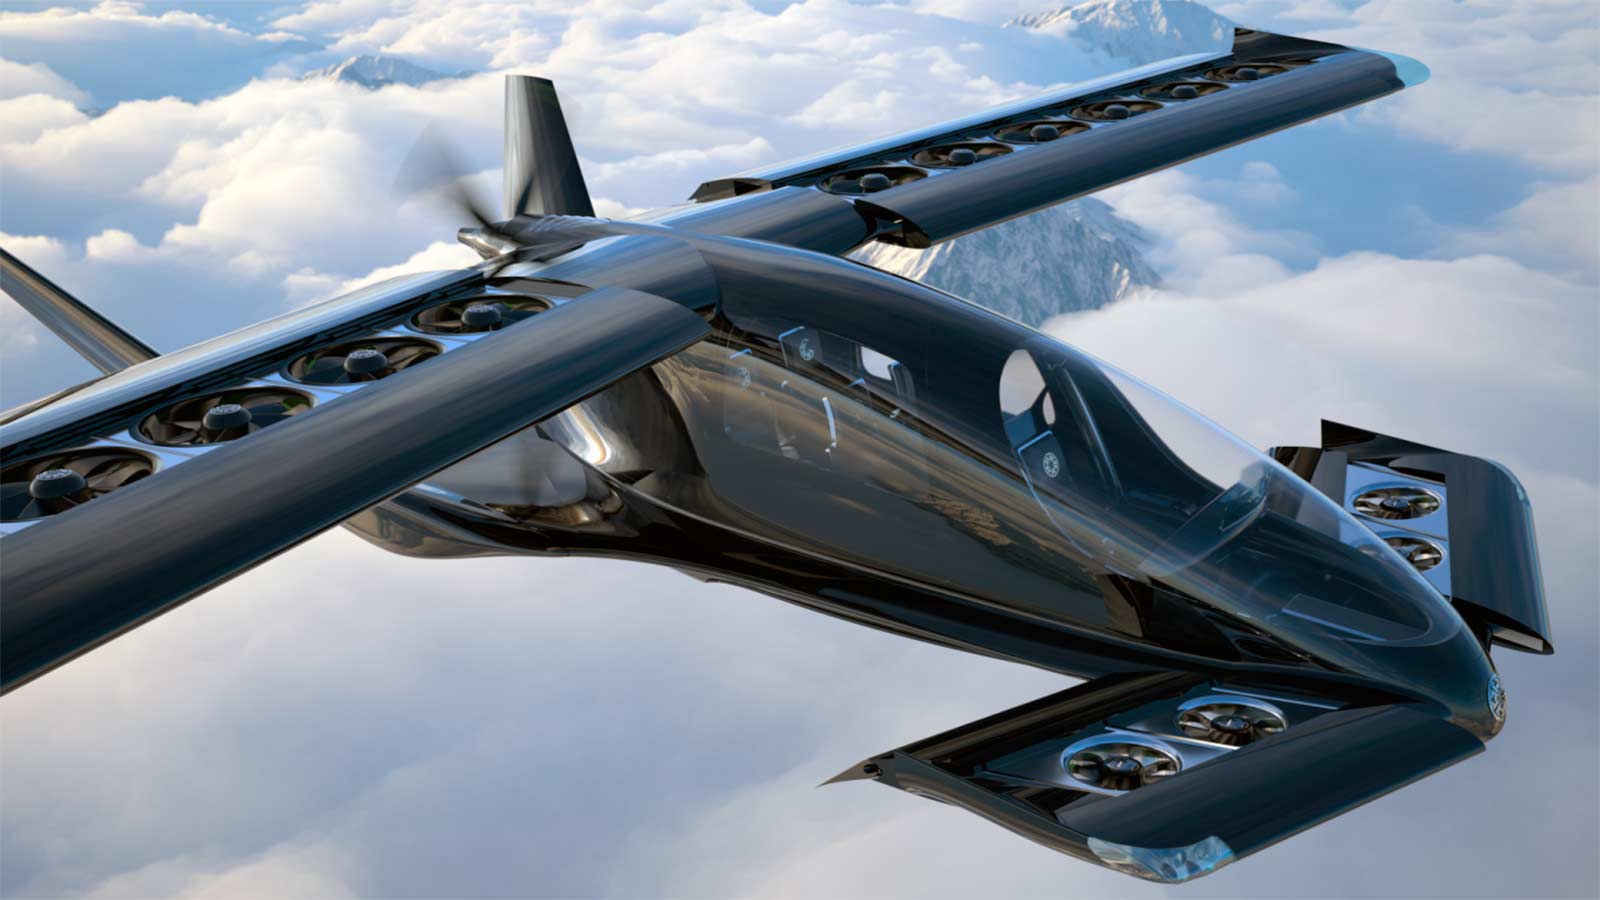 компания Horizon Aircraft представила концепт 5-местного гибридного самолёта с вертикальным взлётом